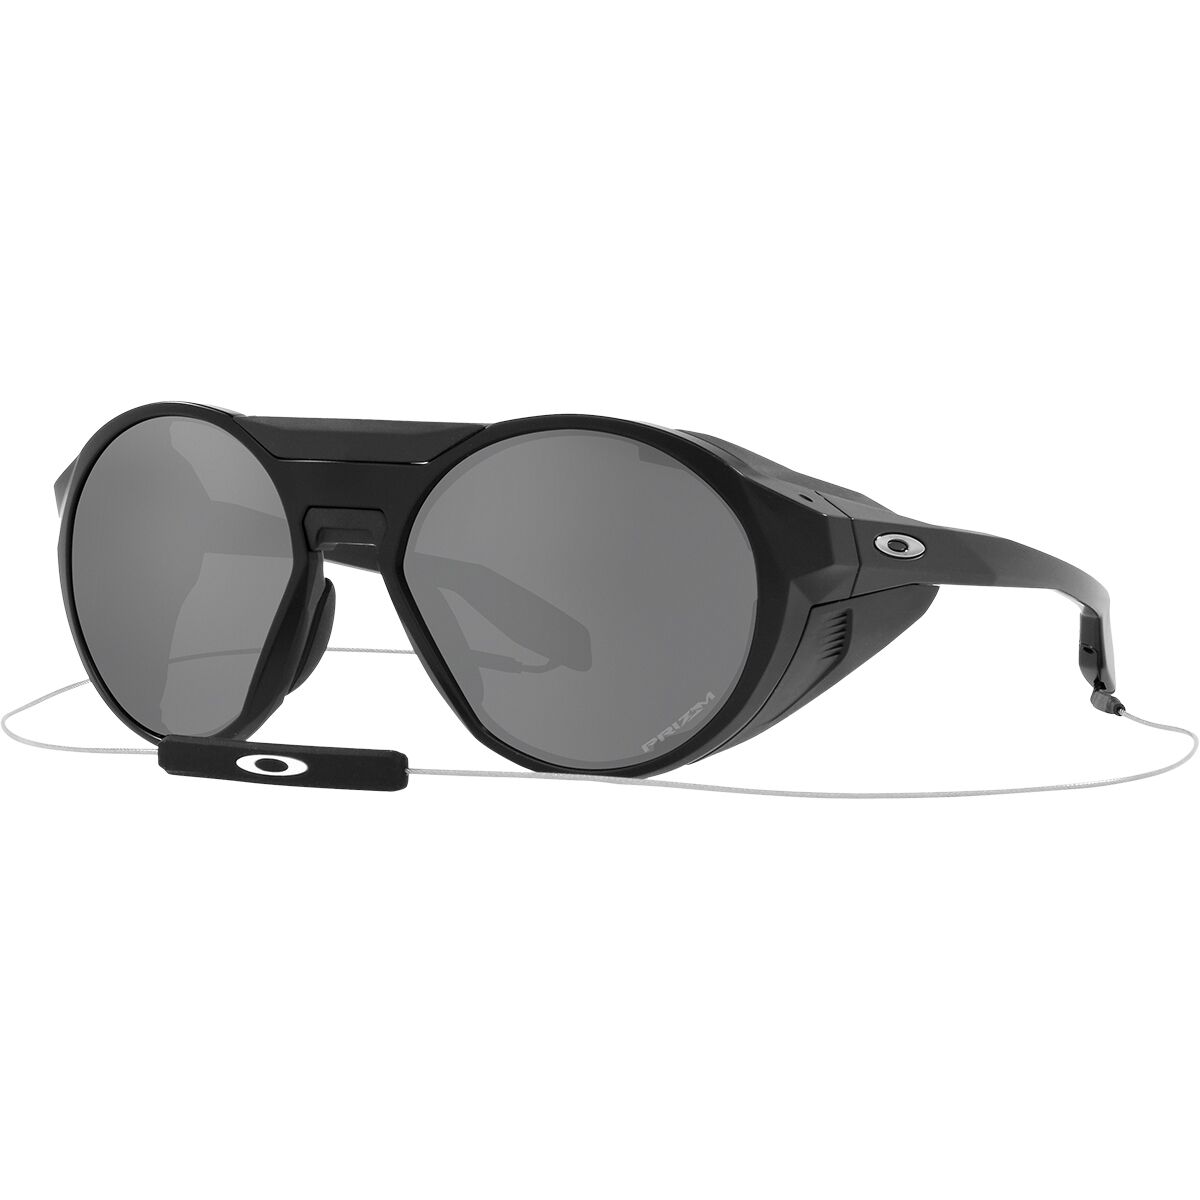 Oakley Clifden Prizm Polarized Sunglasses